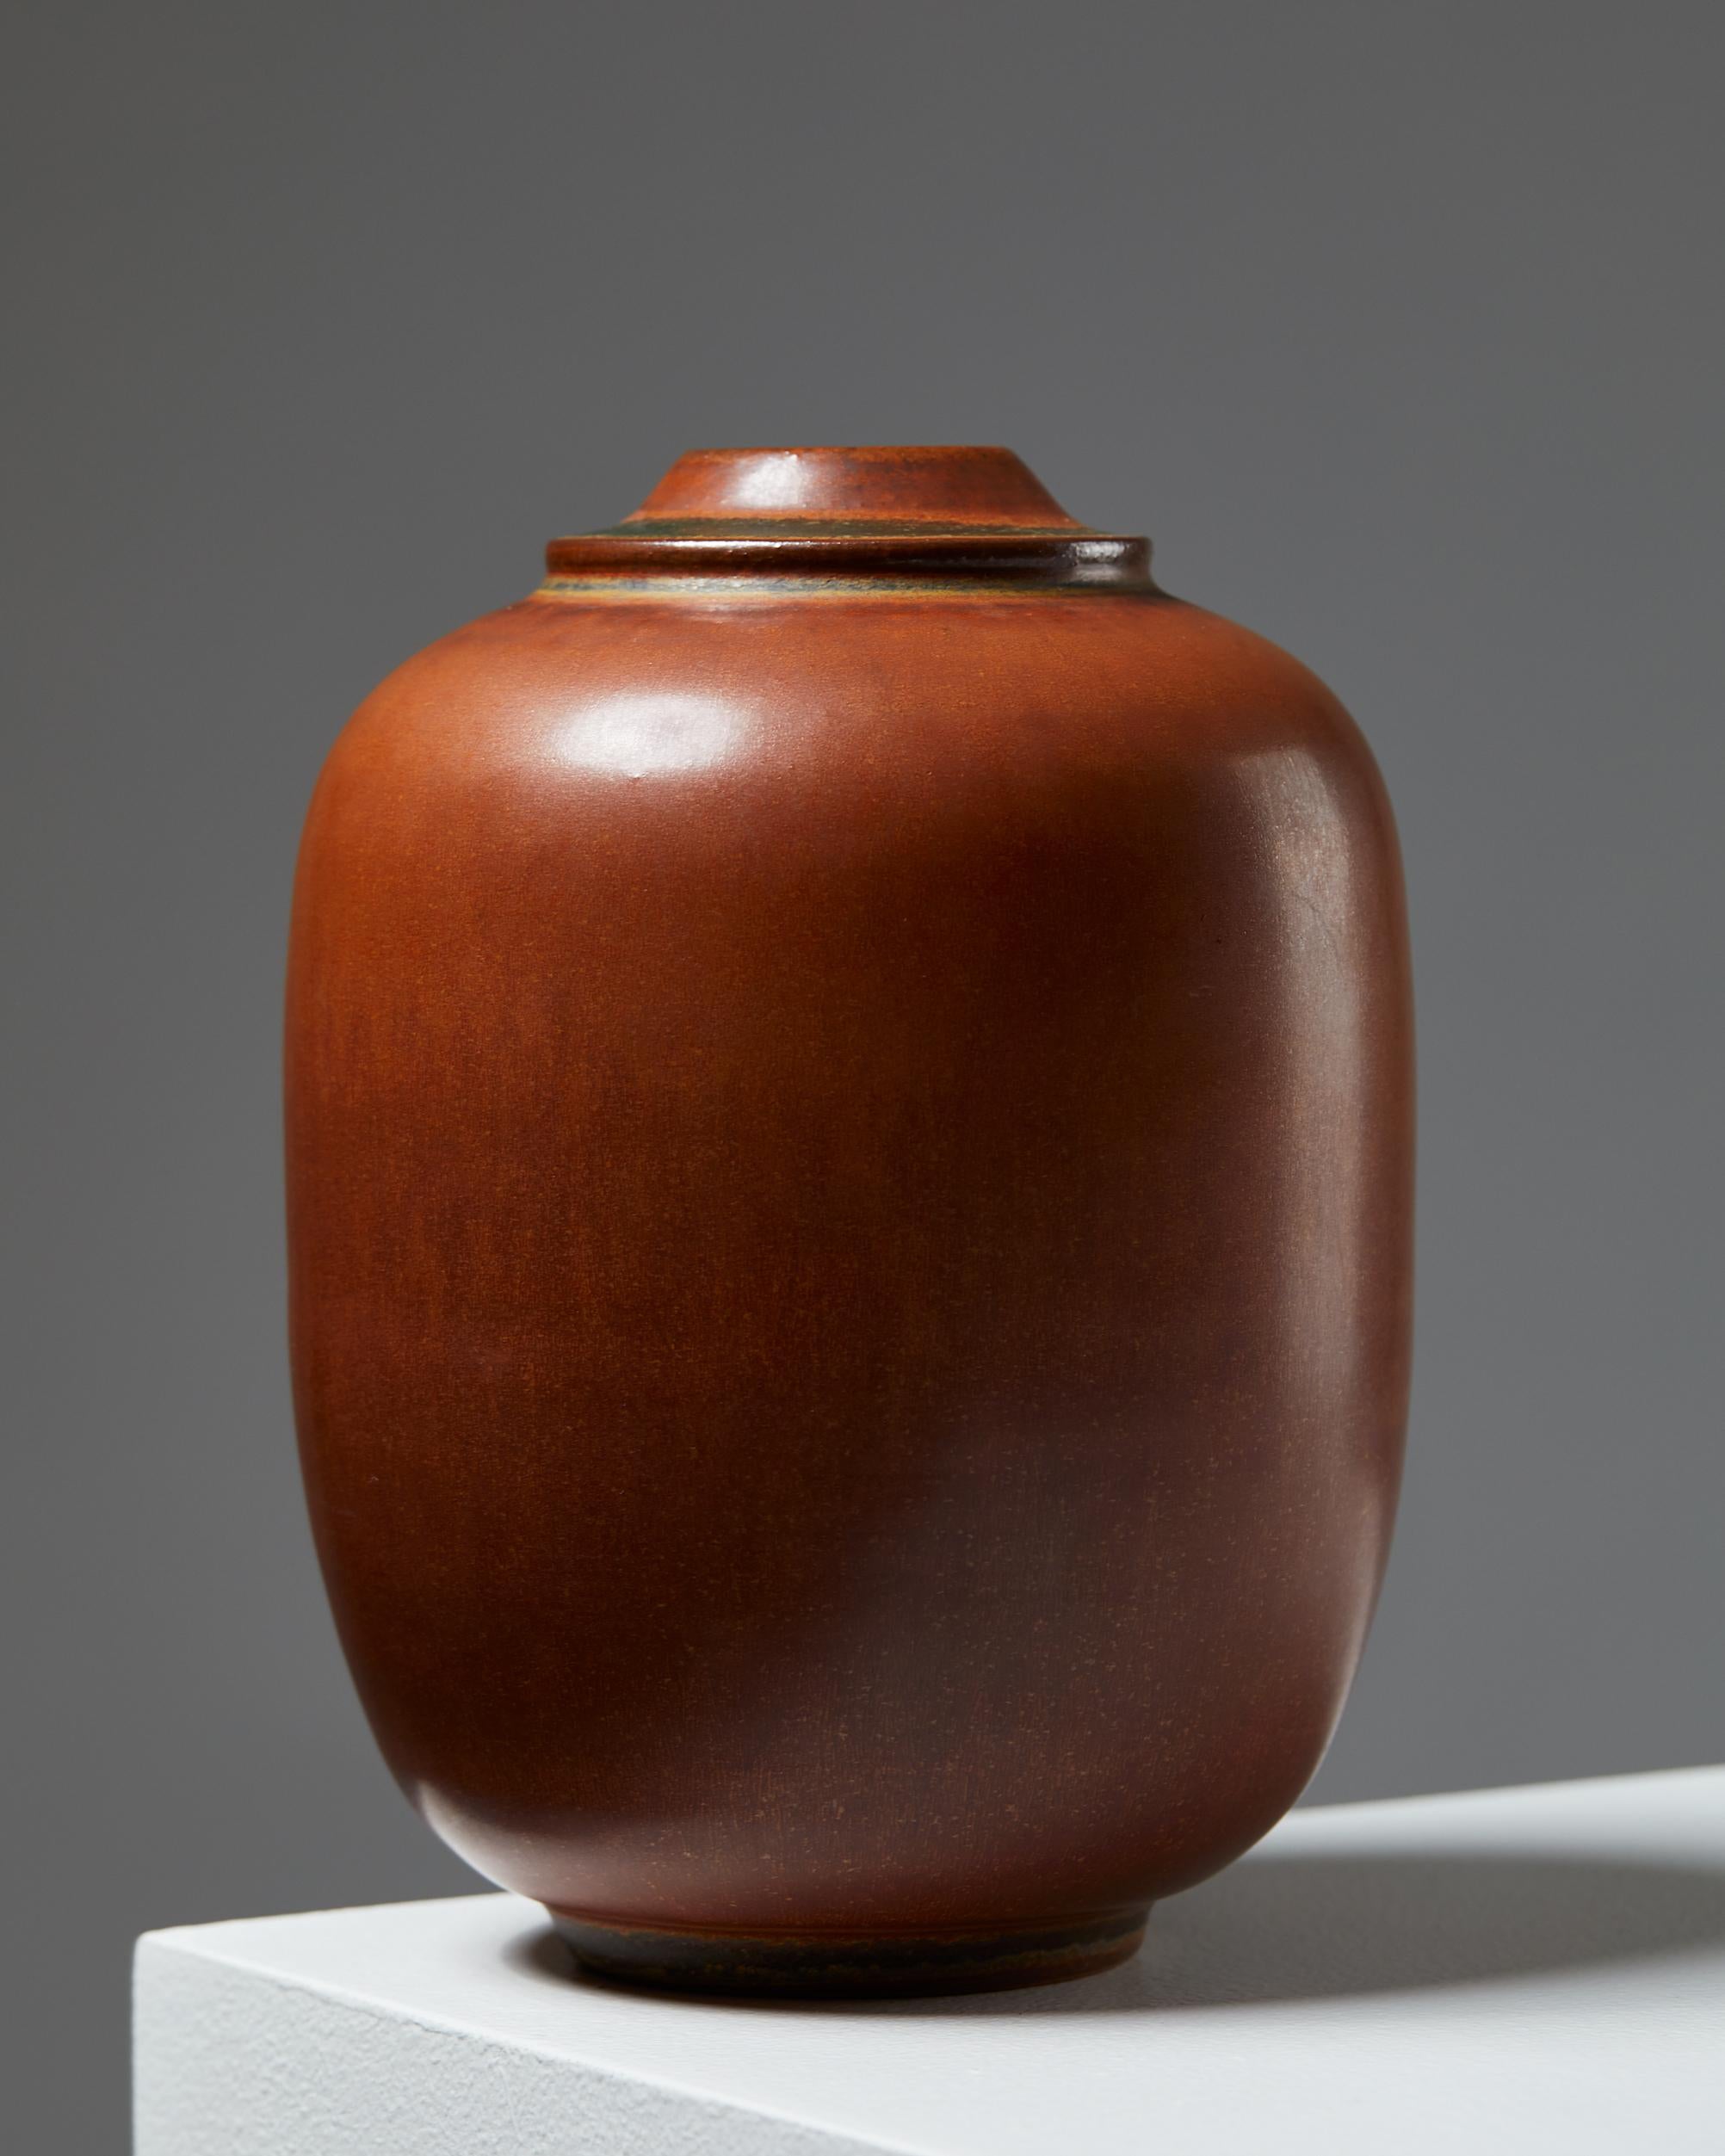 Scandinavian Modern Vase ‘Tobo’ designed by Erich and Ingrid Triller, Sweden, 1950s